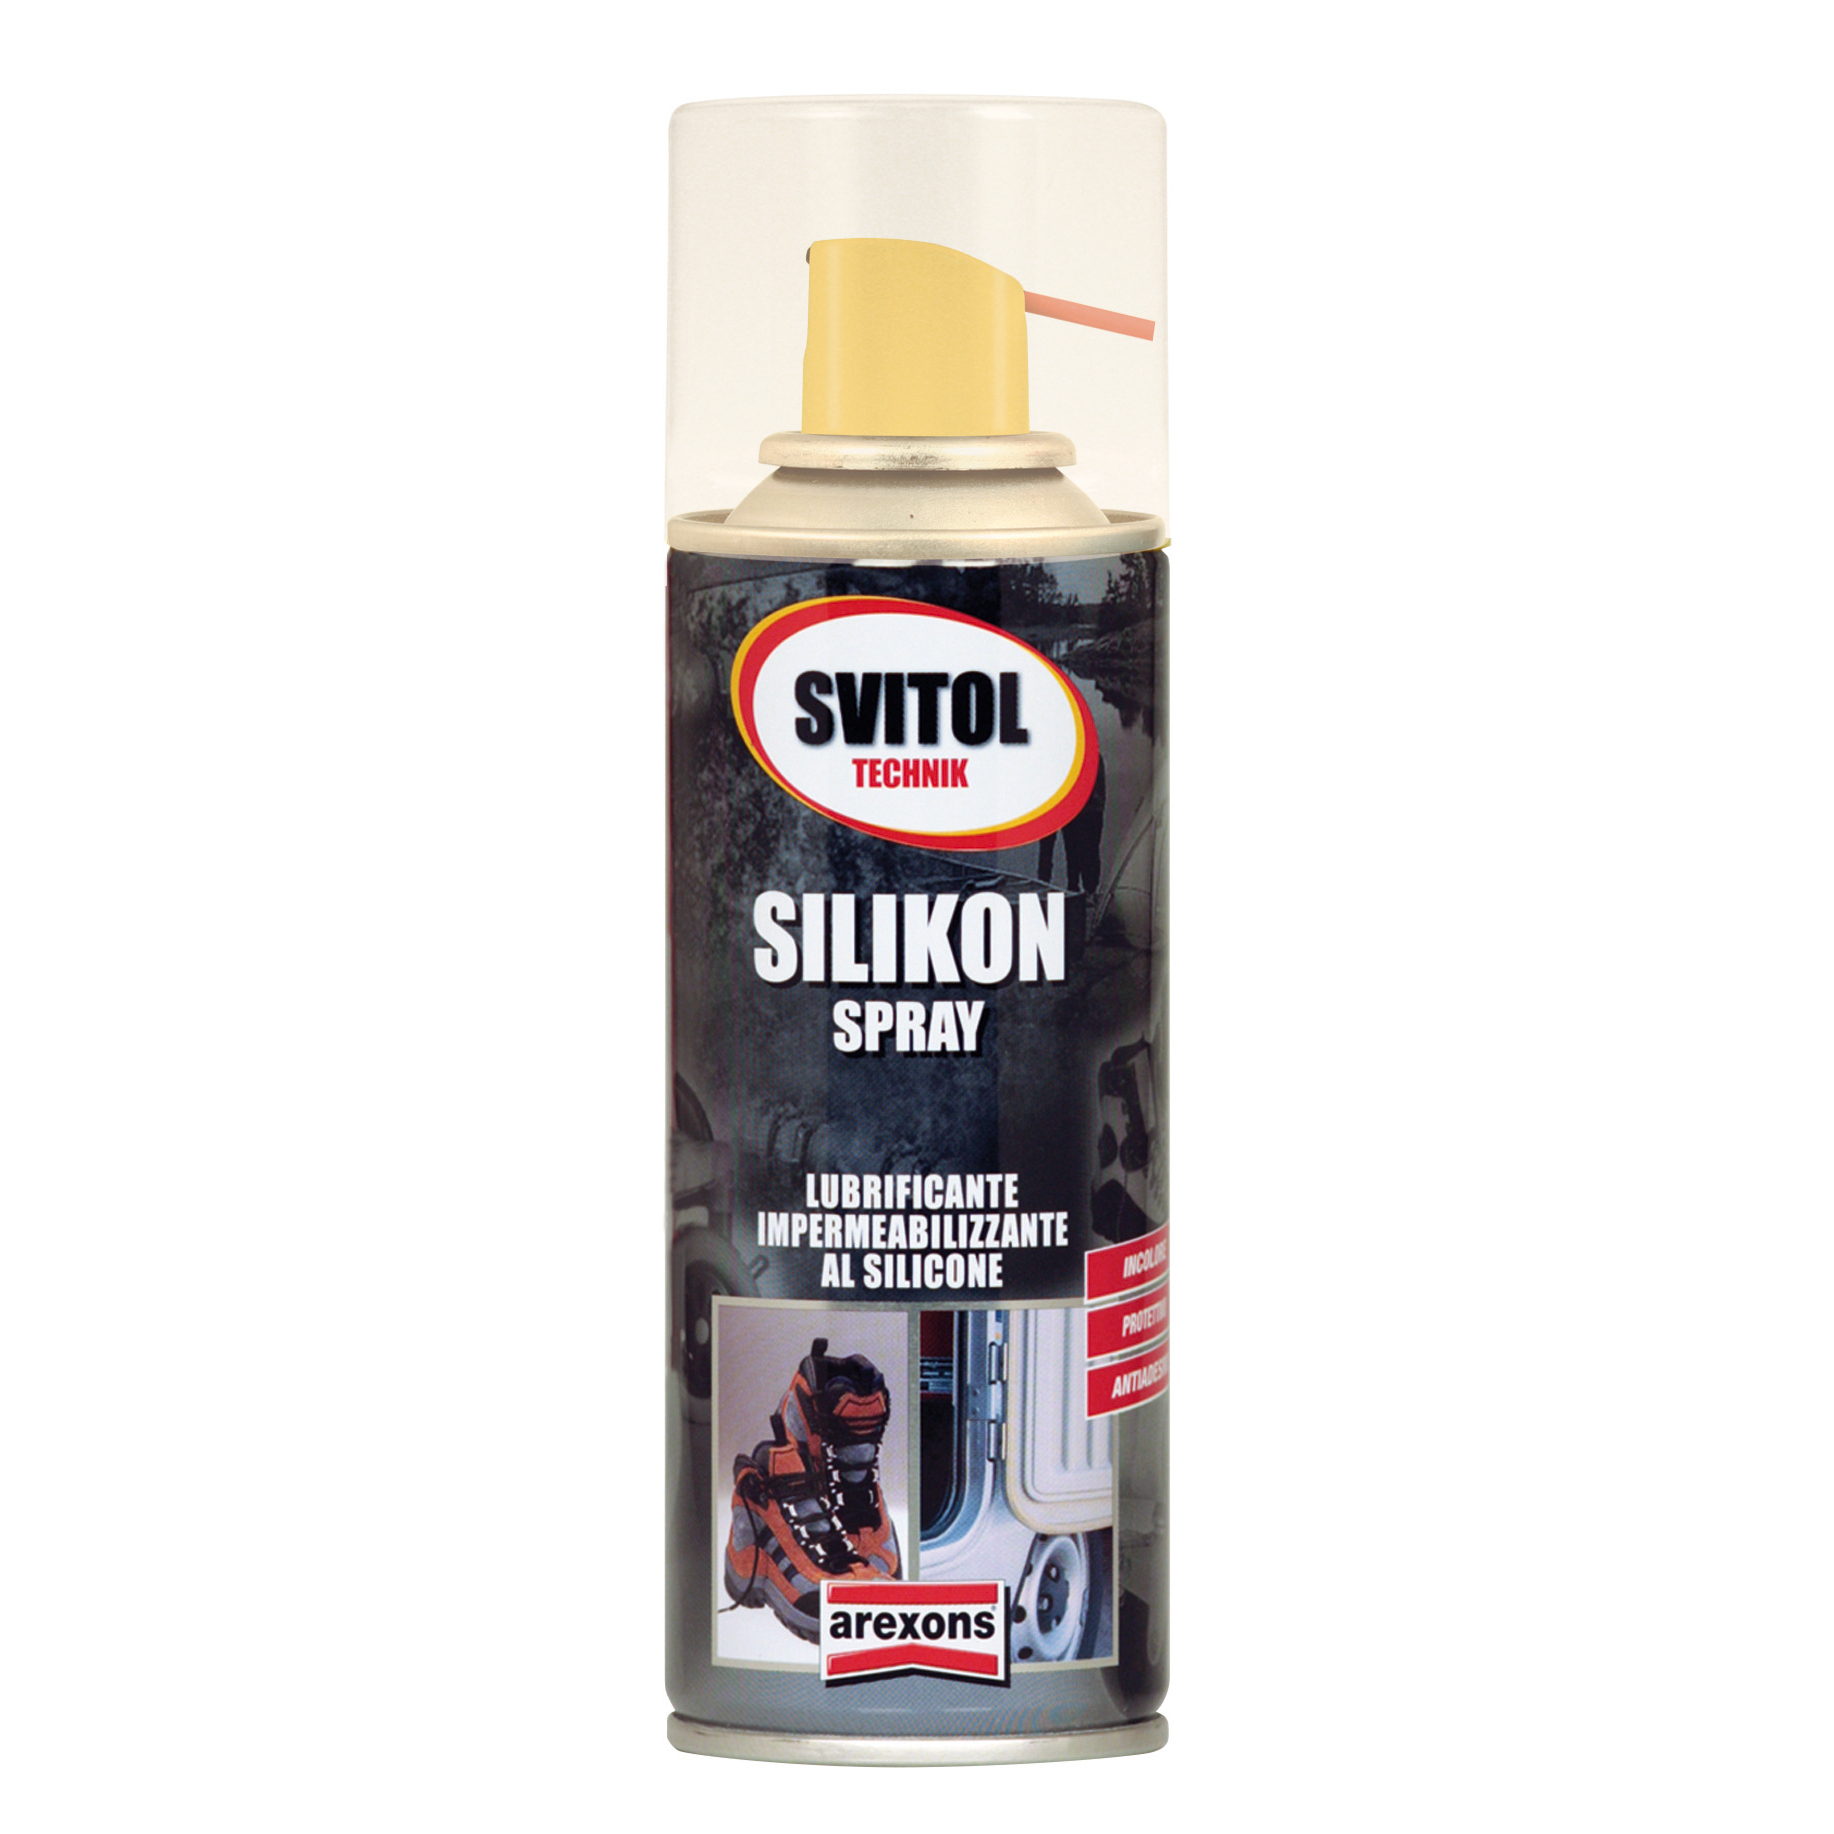 Arexons – SVITOL lubrificante impermeabilizzante al silicone